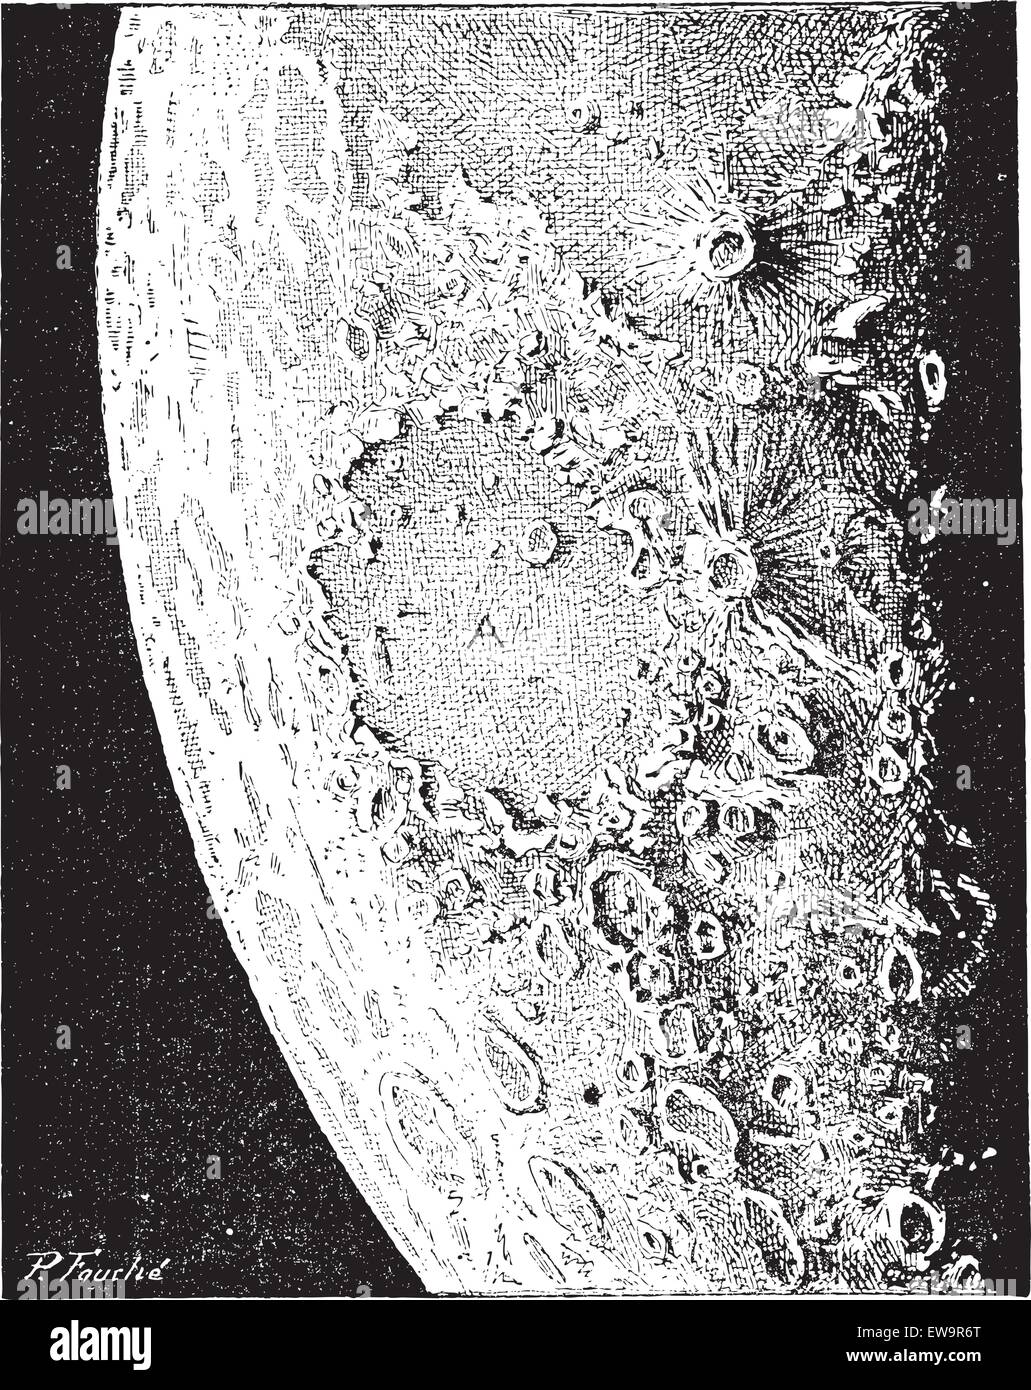 La superficie della luna, che mostra numerosi crateri vulcanici e i crateri da impatto, vintage illustrazioni incise. Dizionario di parole un Illustrazione Vettoriale